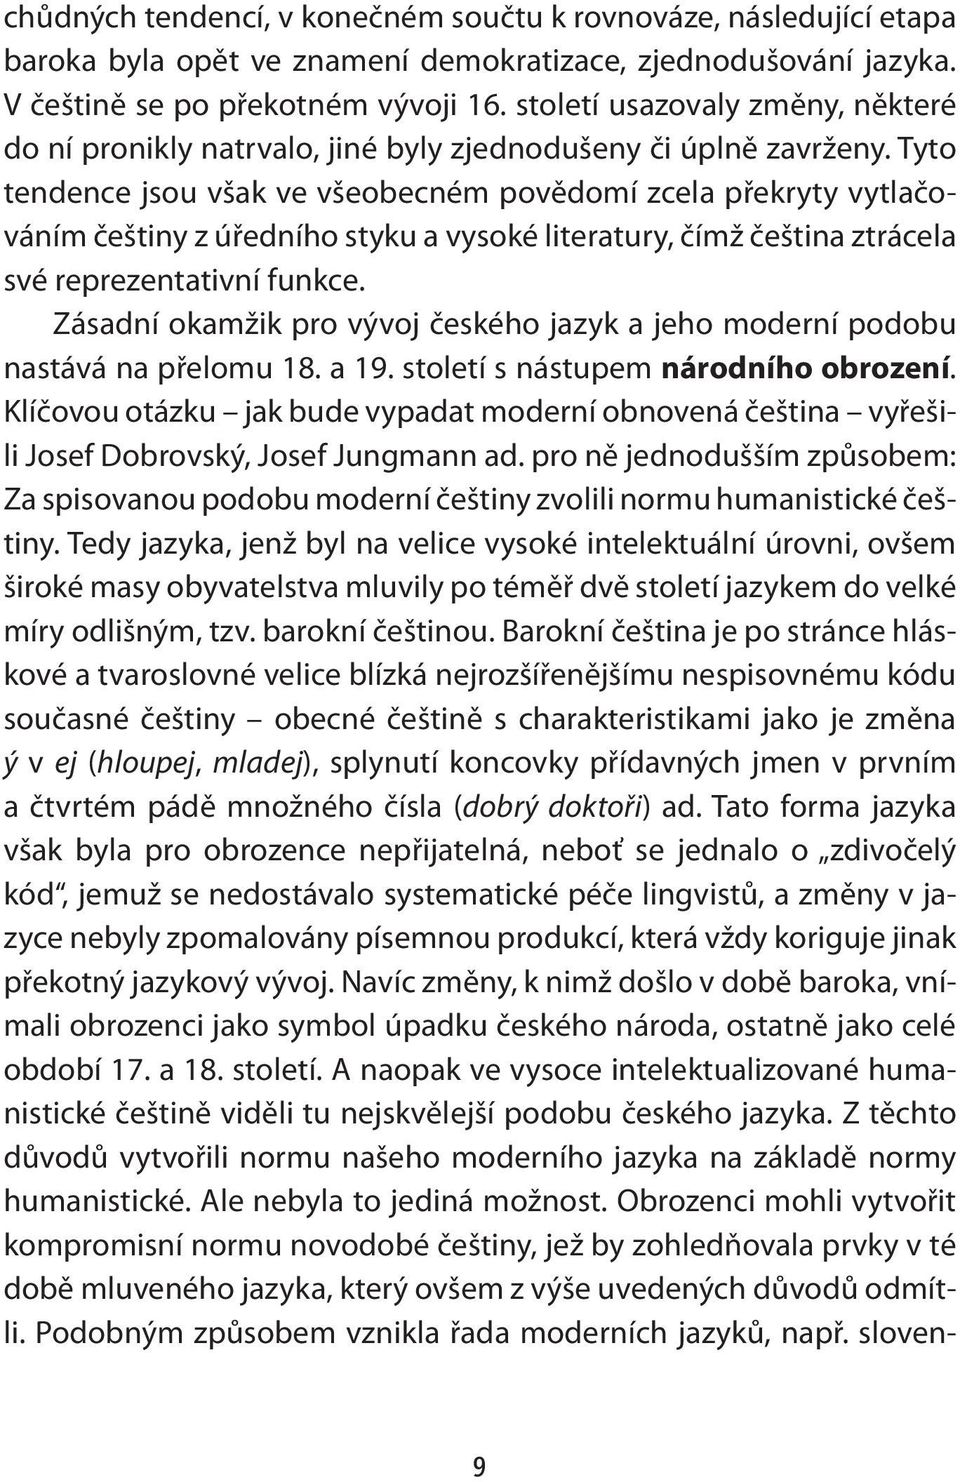 Tyto tendence jsou však ve všeobecném povědomí zcela překryty vytlačováním češtiny z úředního styku a vysoké literatury, čímž čeština ztrácela své reprezentativní funkce.